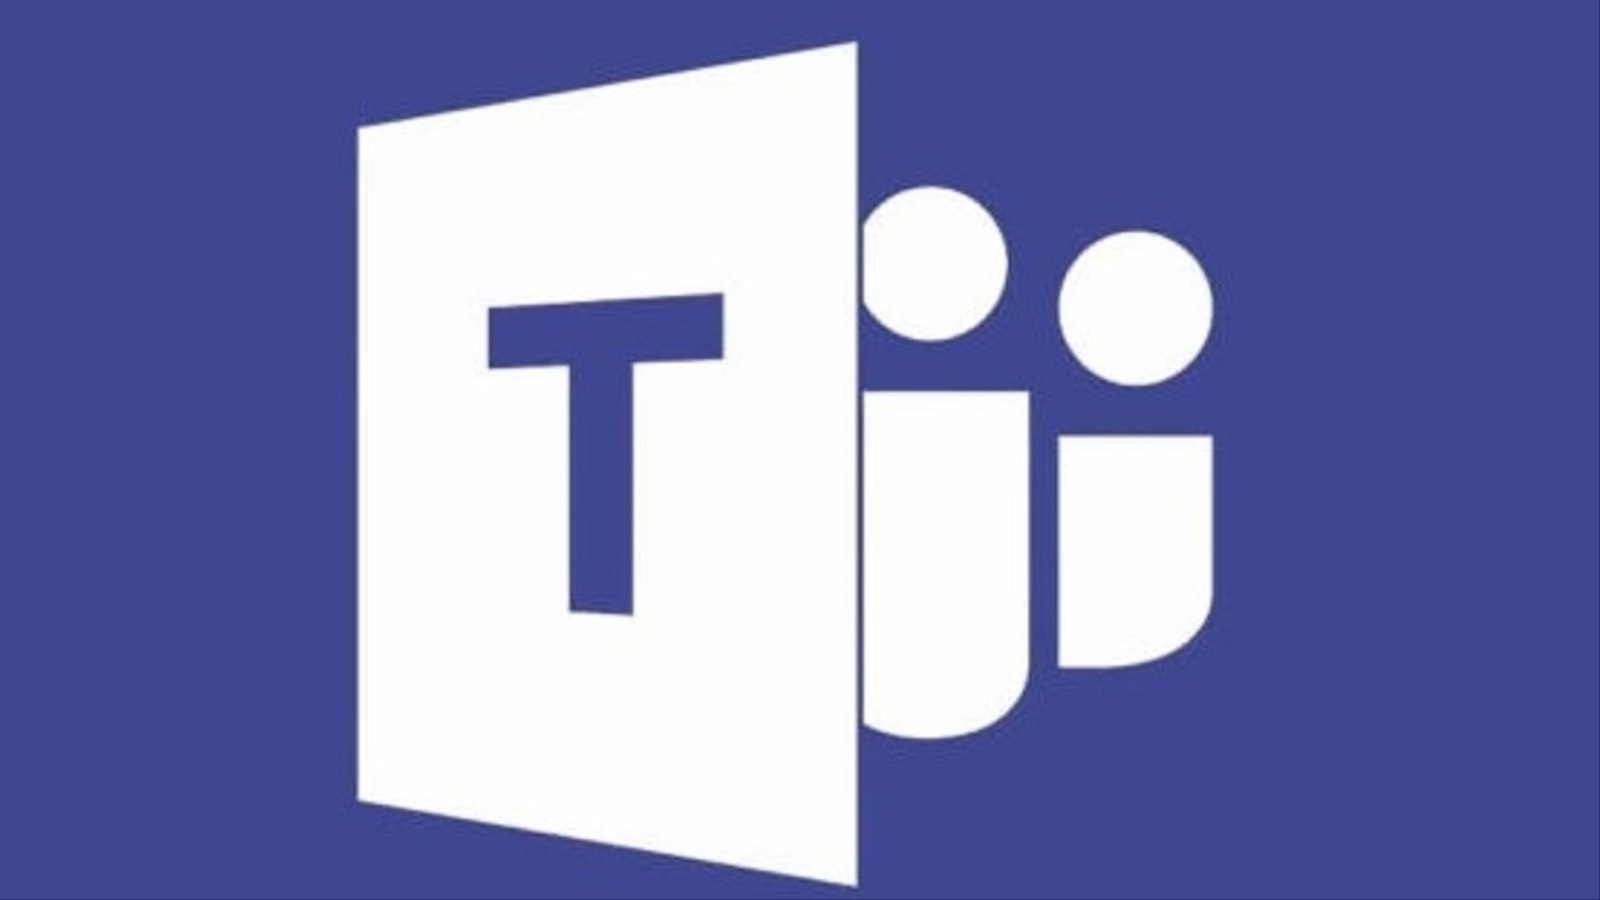 ‪مايكروسوفت تيمز البرنامج المفضل للمؤسسات‬ (مواقع التواصل)